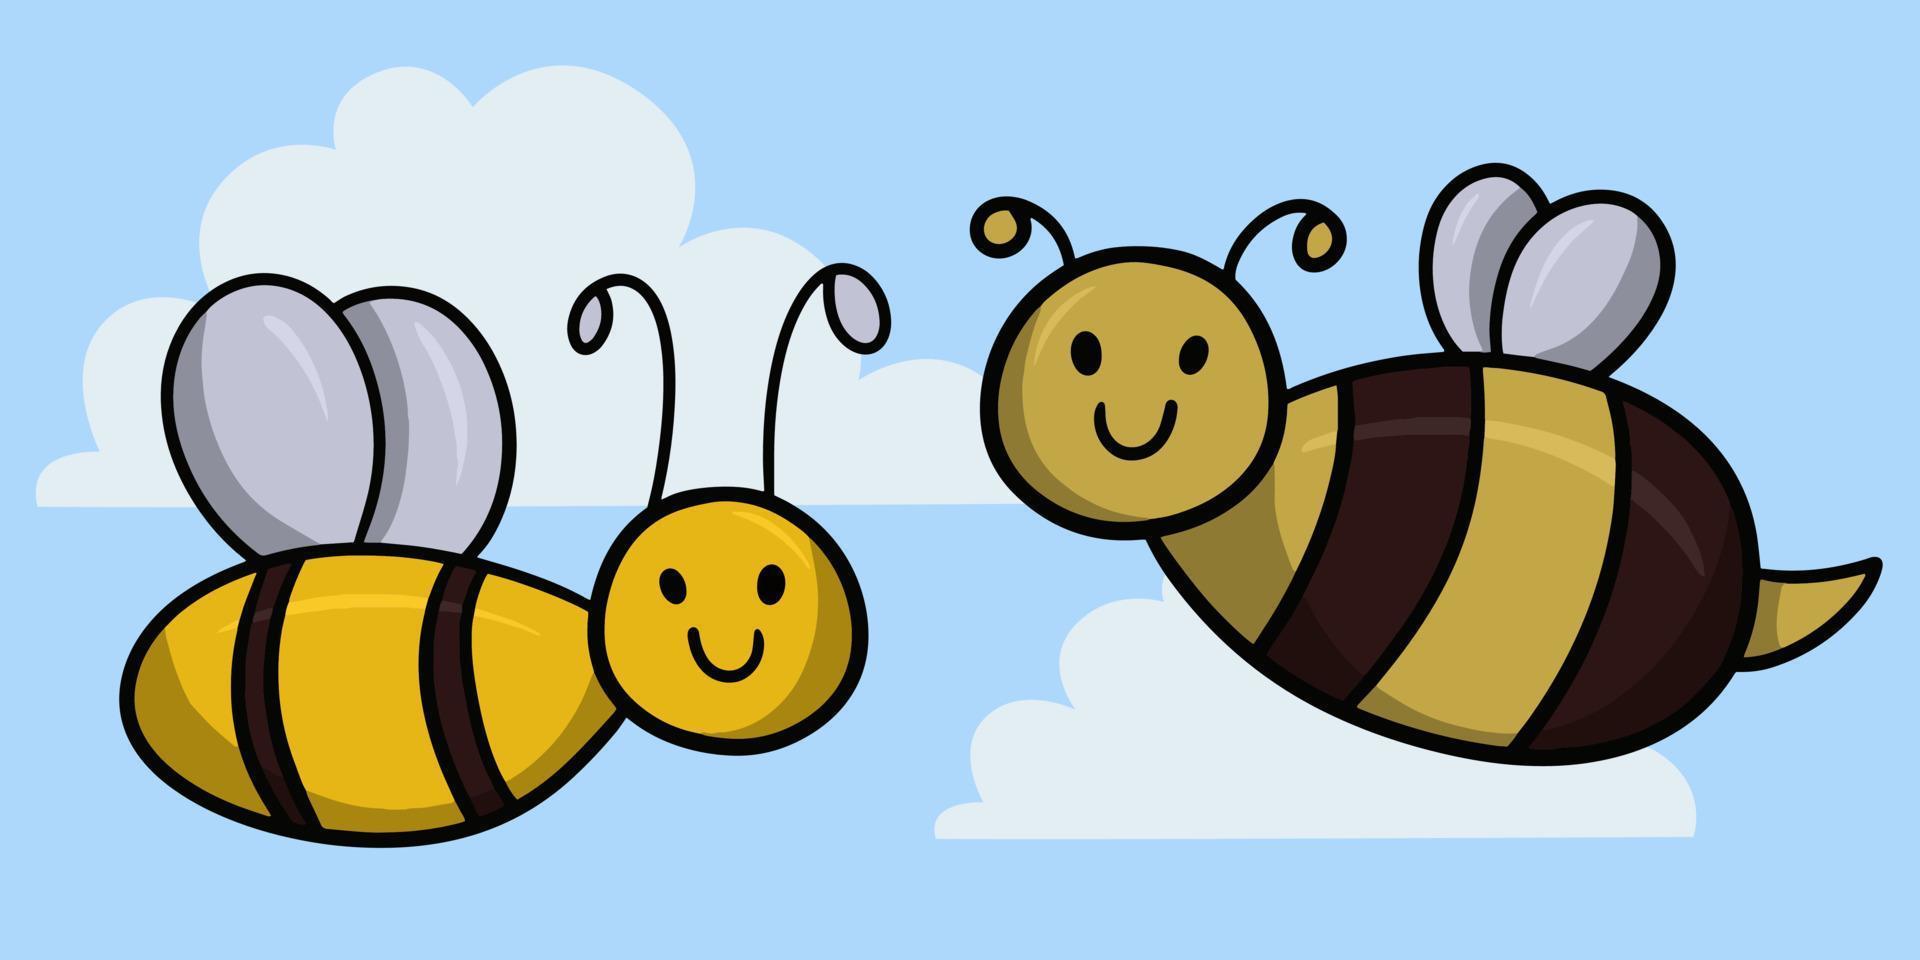 söta tecknade insekter, leende för bi och humlor, vektorillustration på en ljus bakgrund vektor